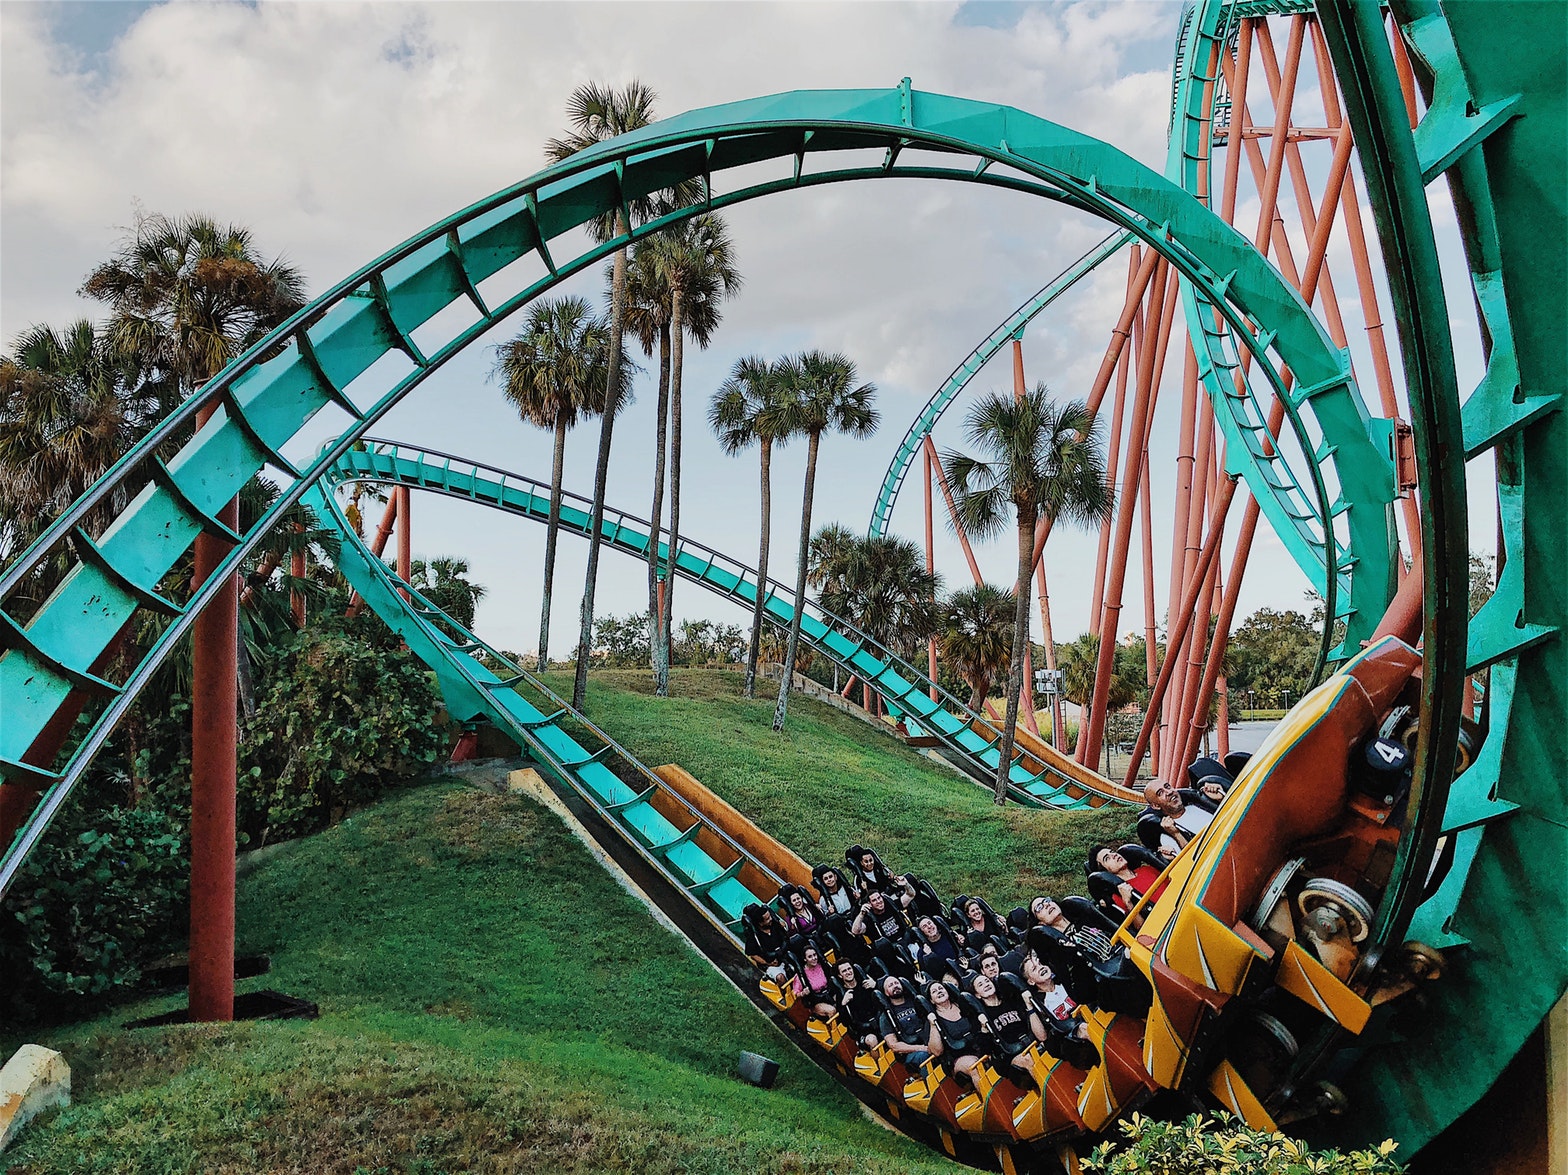 Florida roller coaster fun | Florida travel